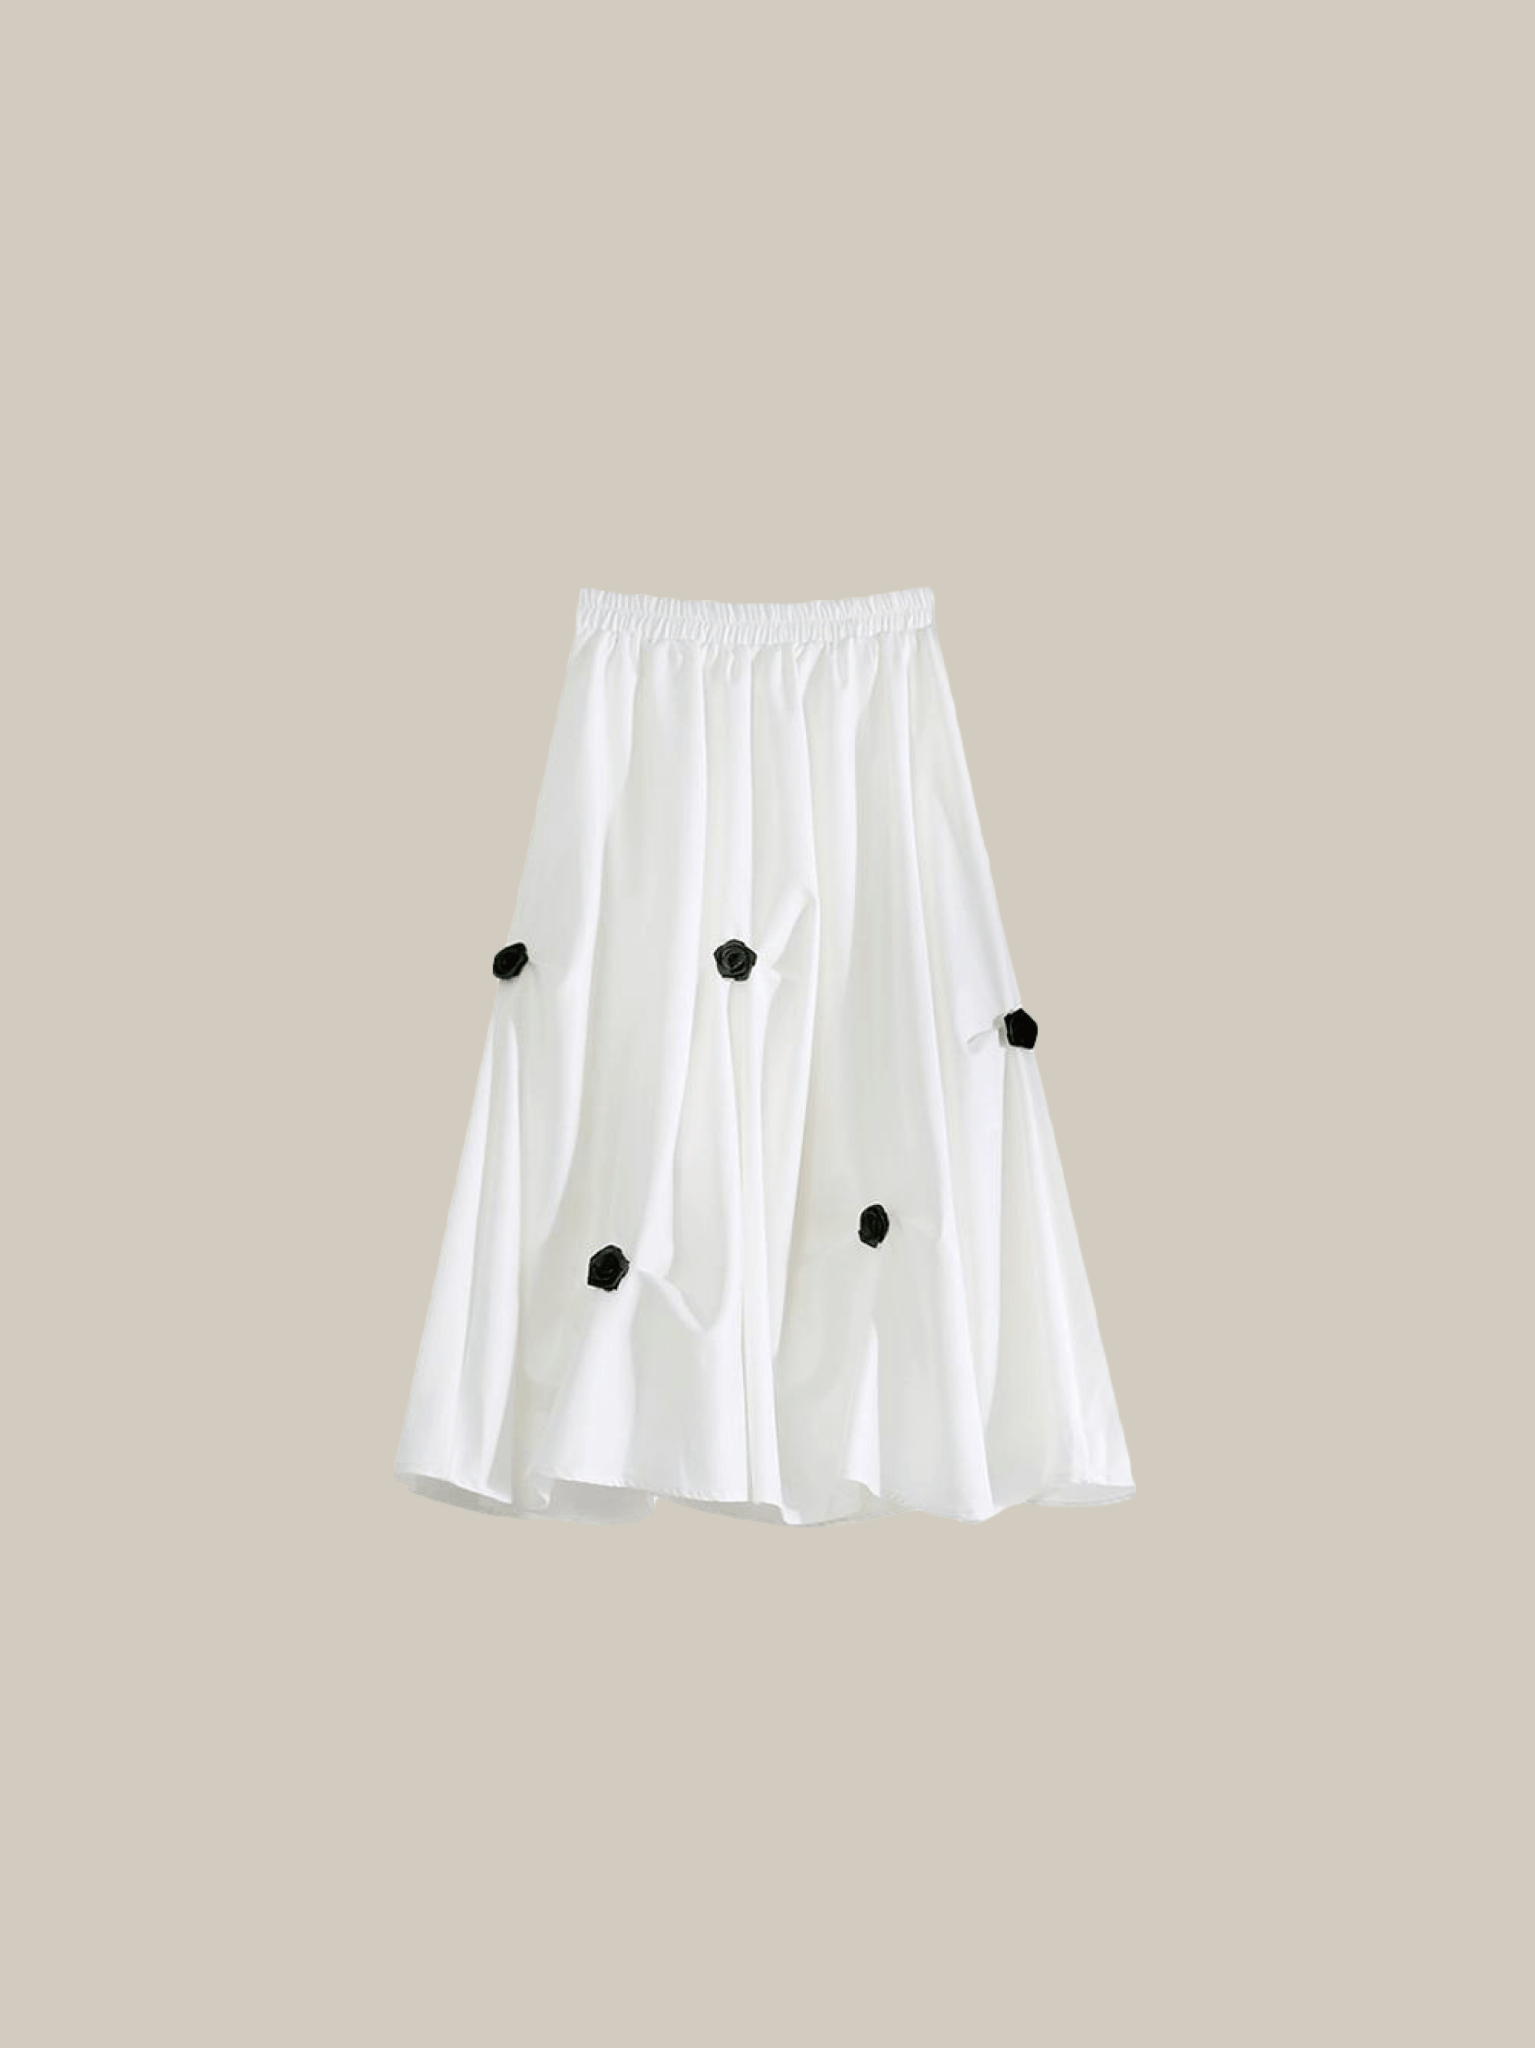 Floral Applique Pleat Skirt - LOVE POMME POMME